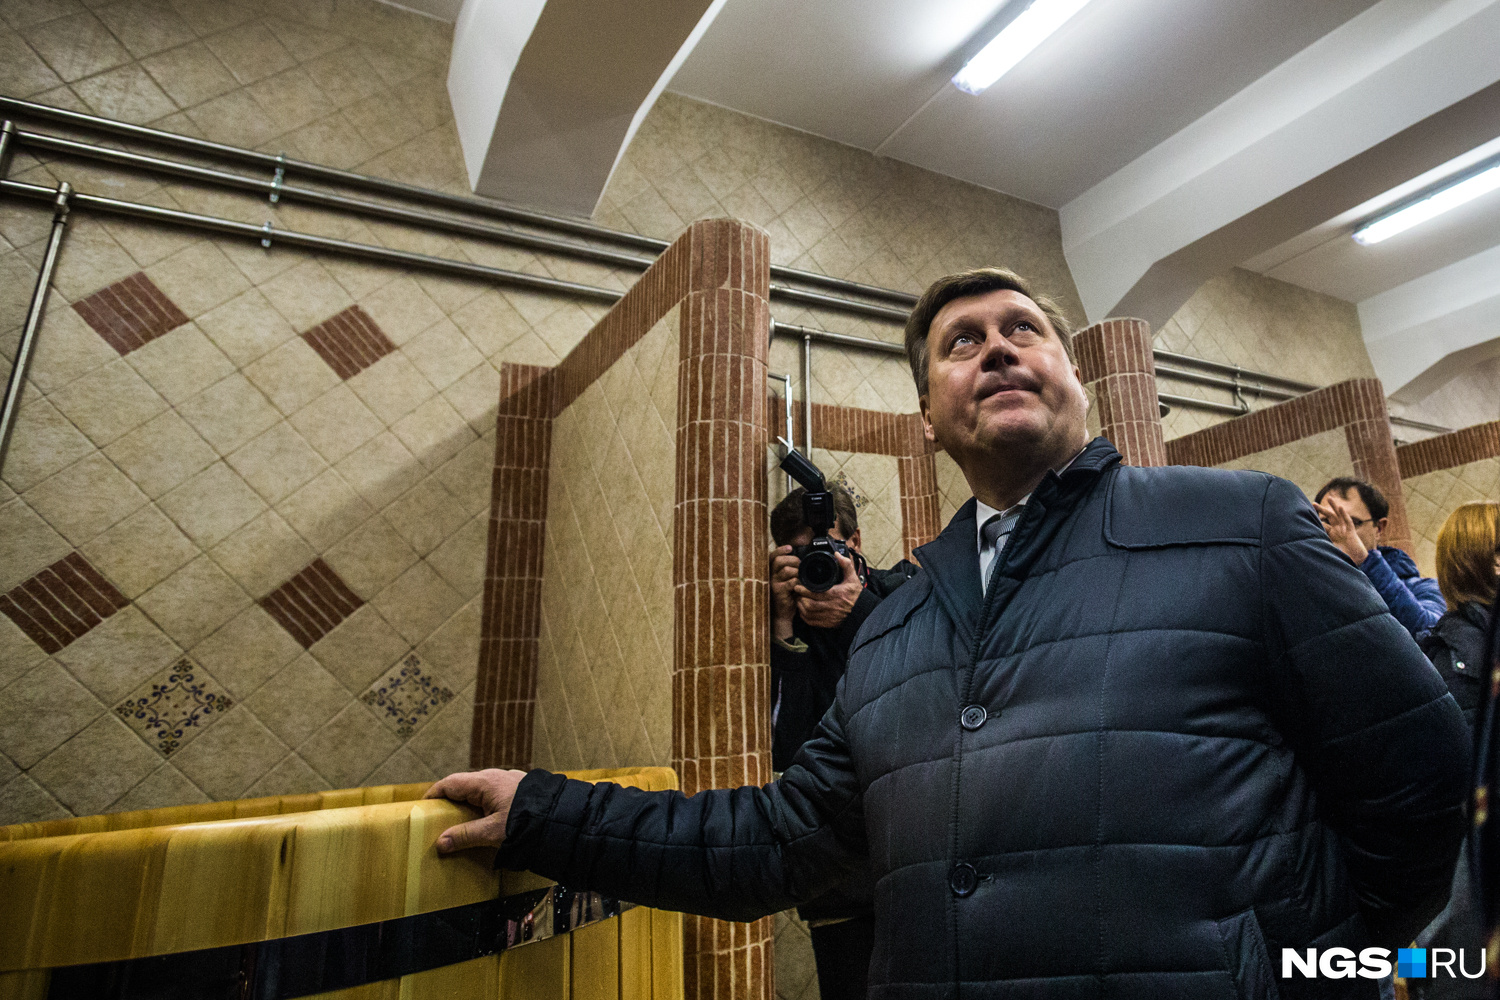 Мэр Анатолий Локоть осматривает помещения «Сандуновских бань»